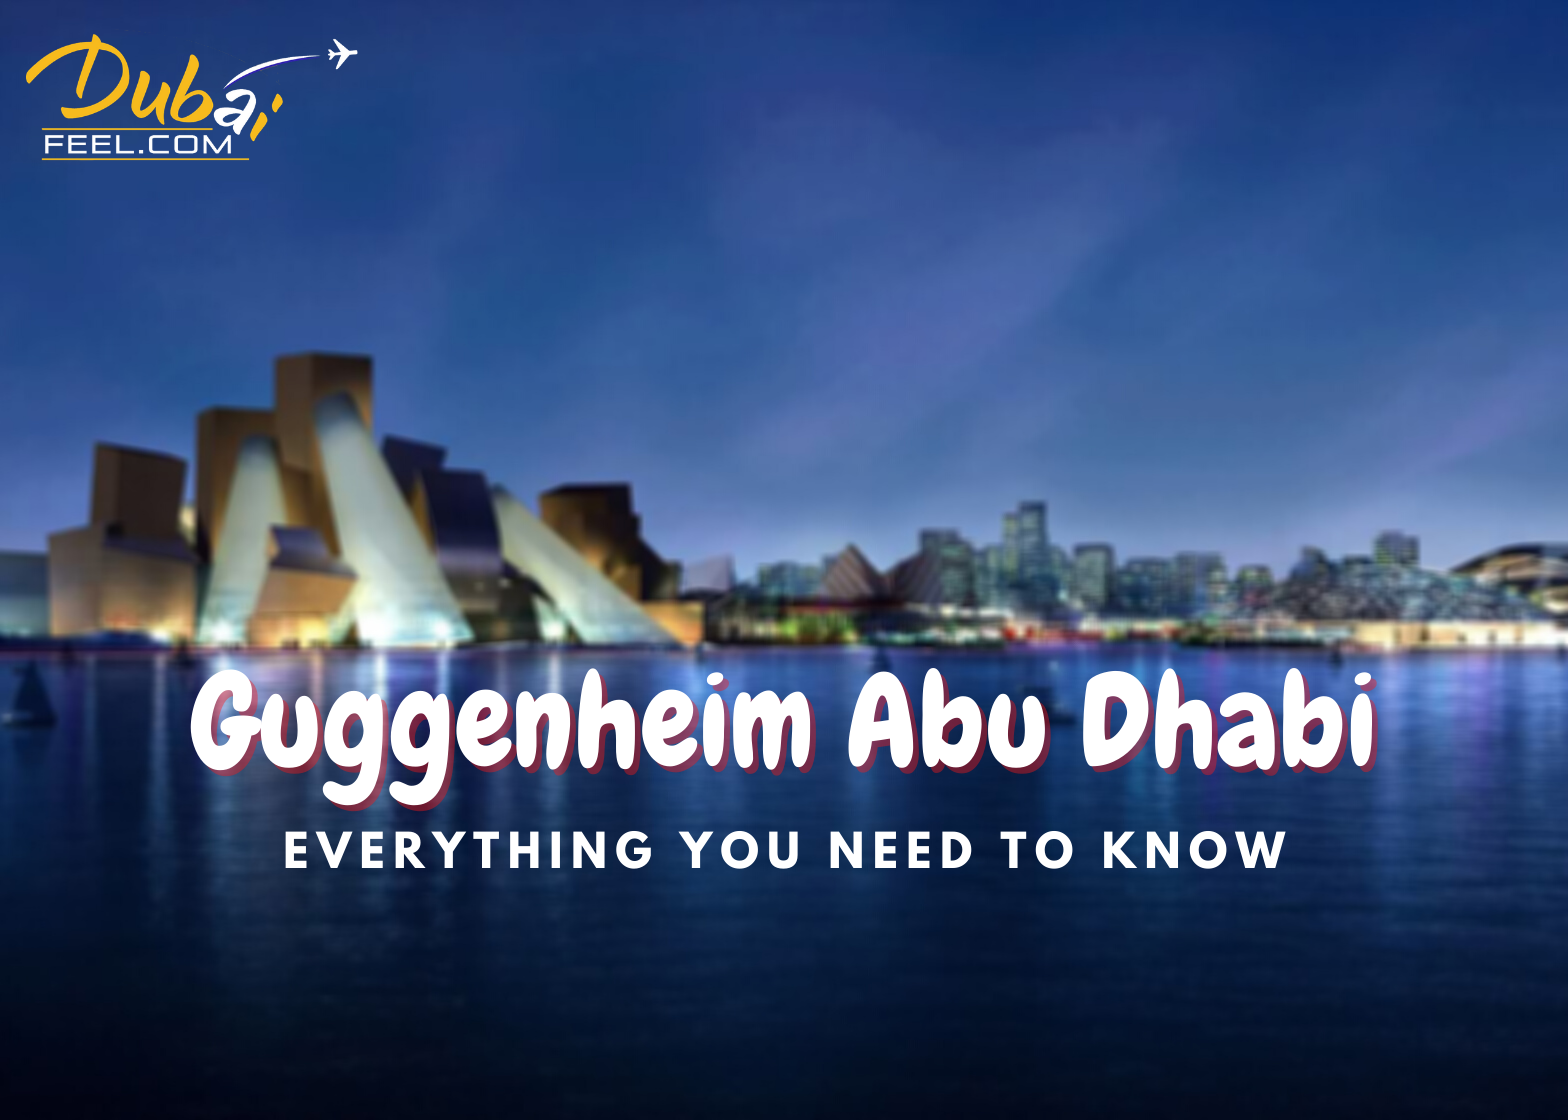 Guggenheim Abu Dhabi Dubaifeel